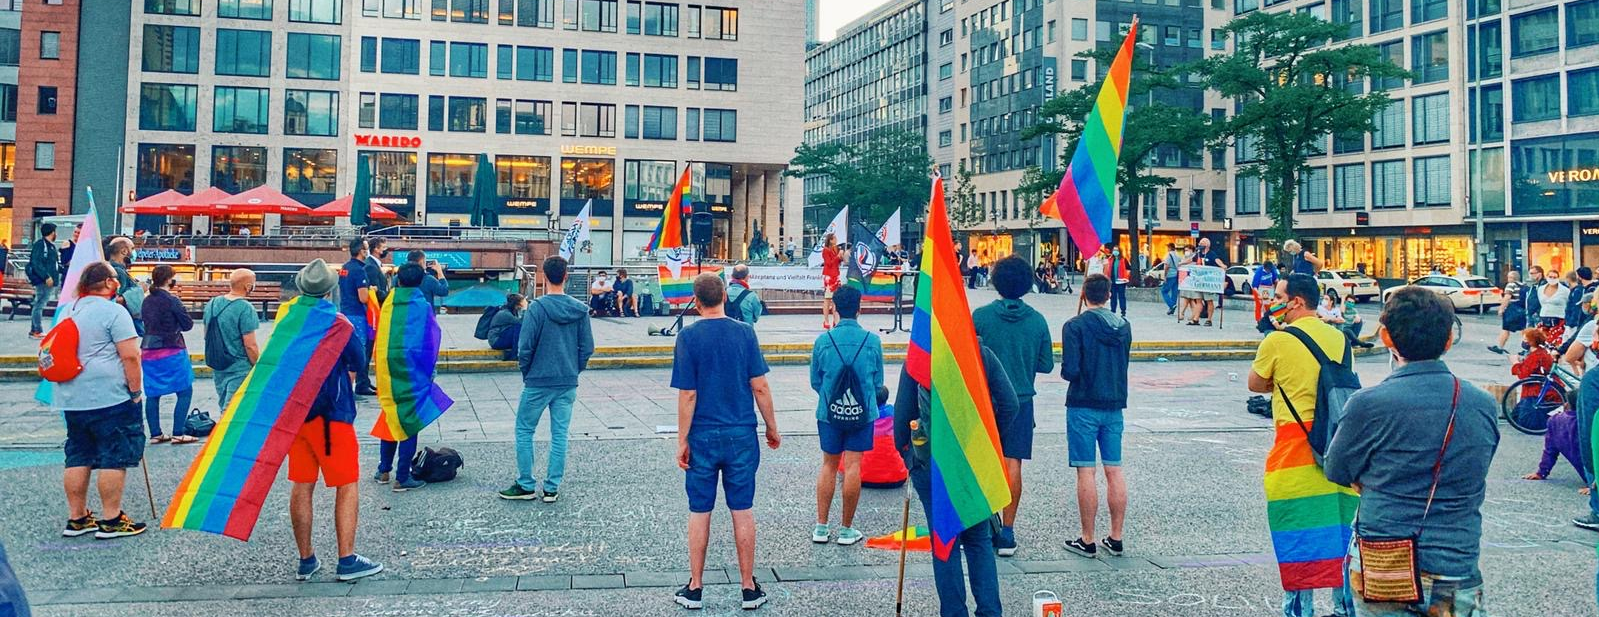 Demo Solidarität mit Queers* in Polen und weltweit